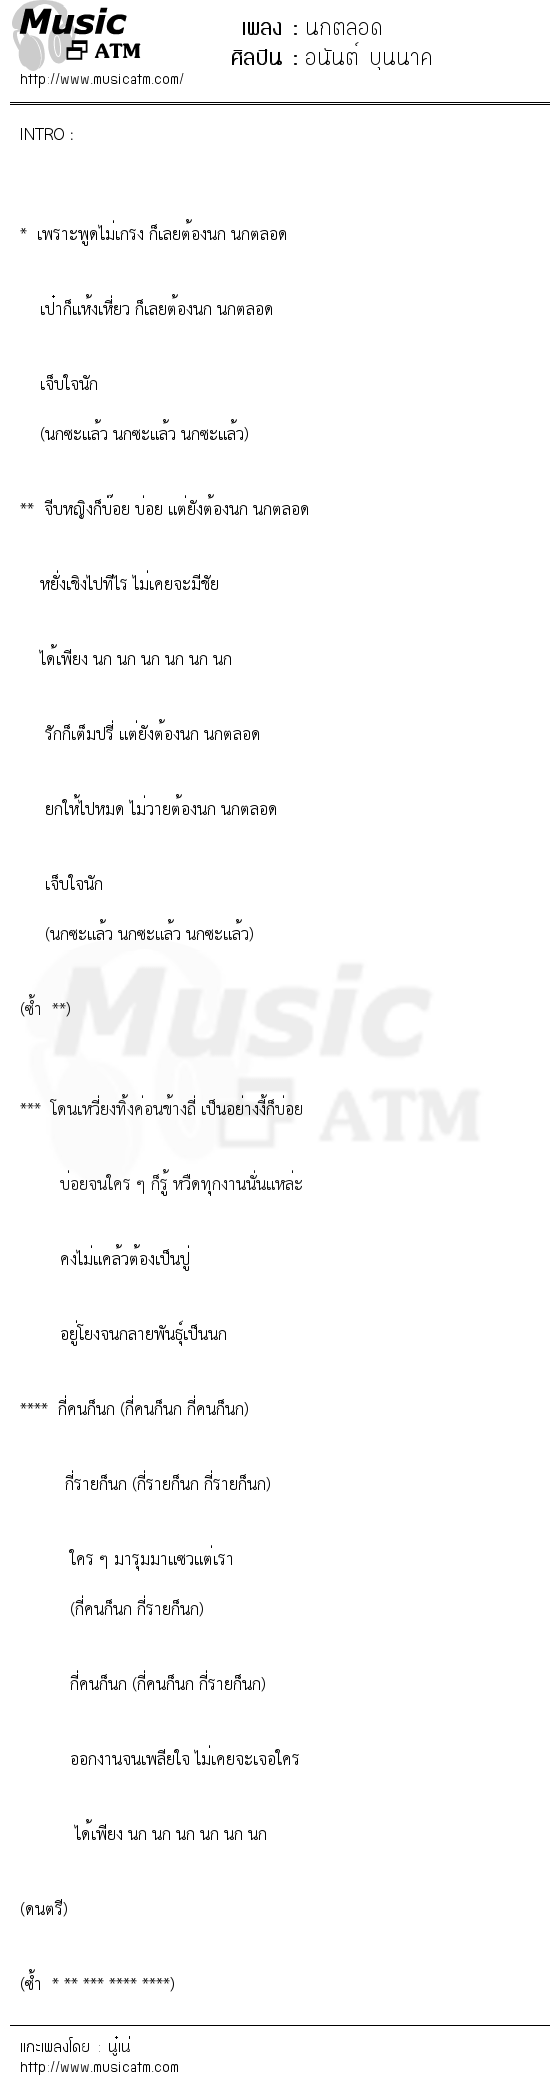 เนื้อเพลง นกตลอด - อนันต์ บุนนาค | เพลงไทย